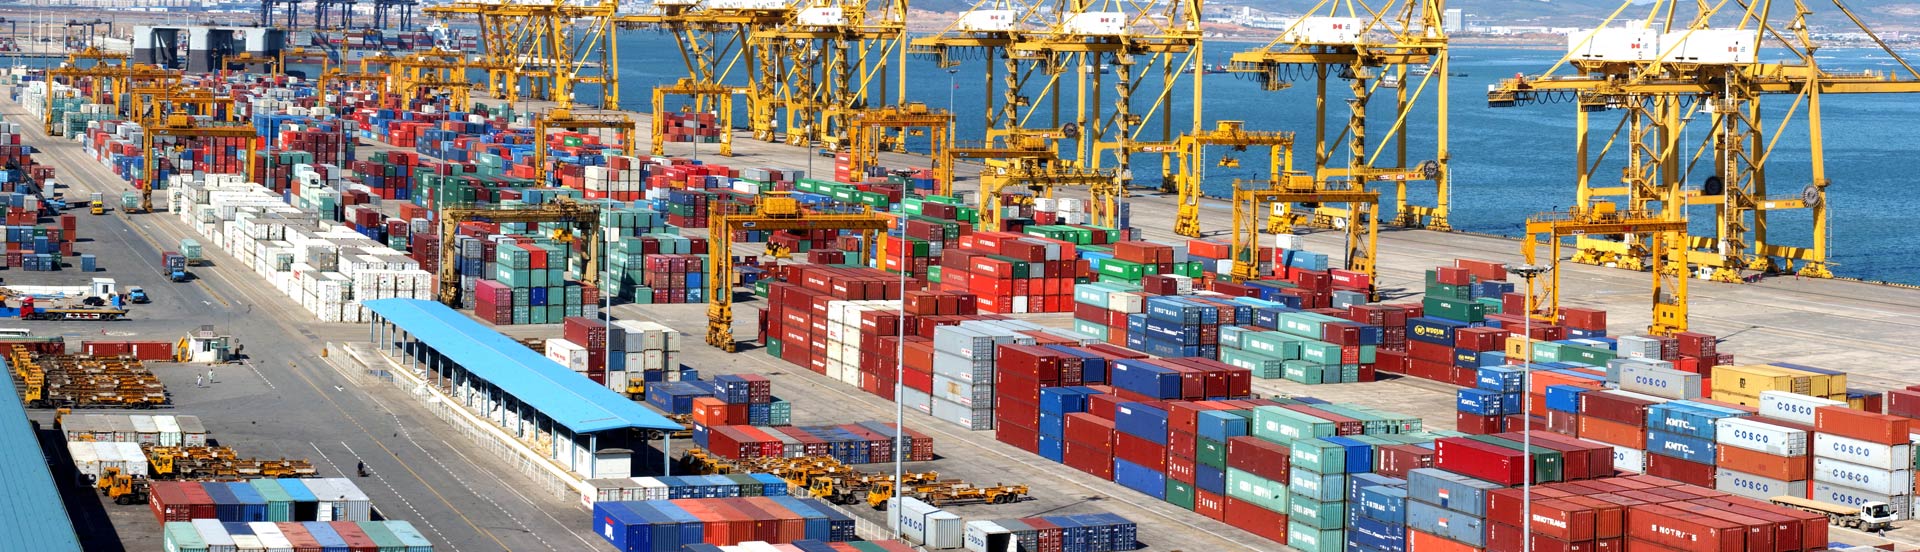 天津港到Singapore,Singapore   新加坡,新加坡海运费集装箱海运费